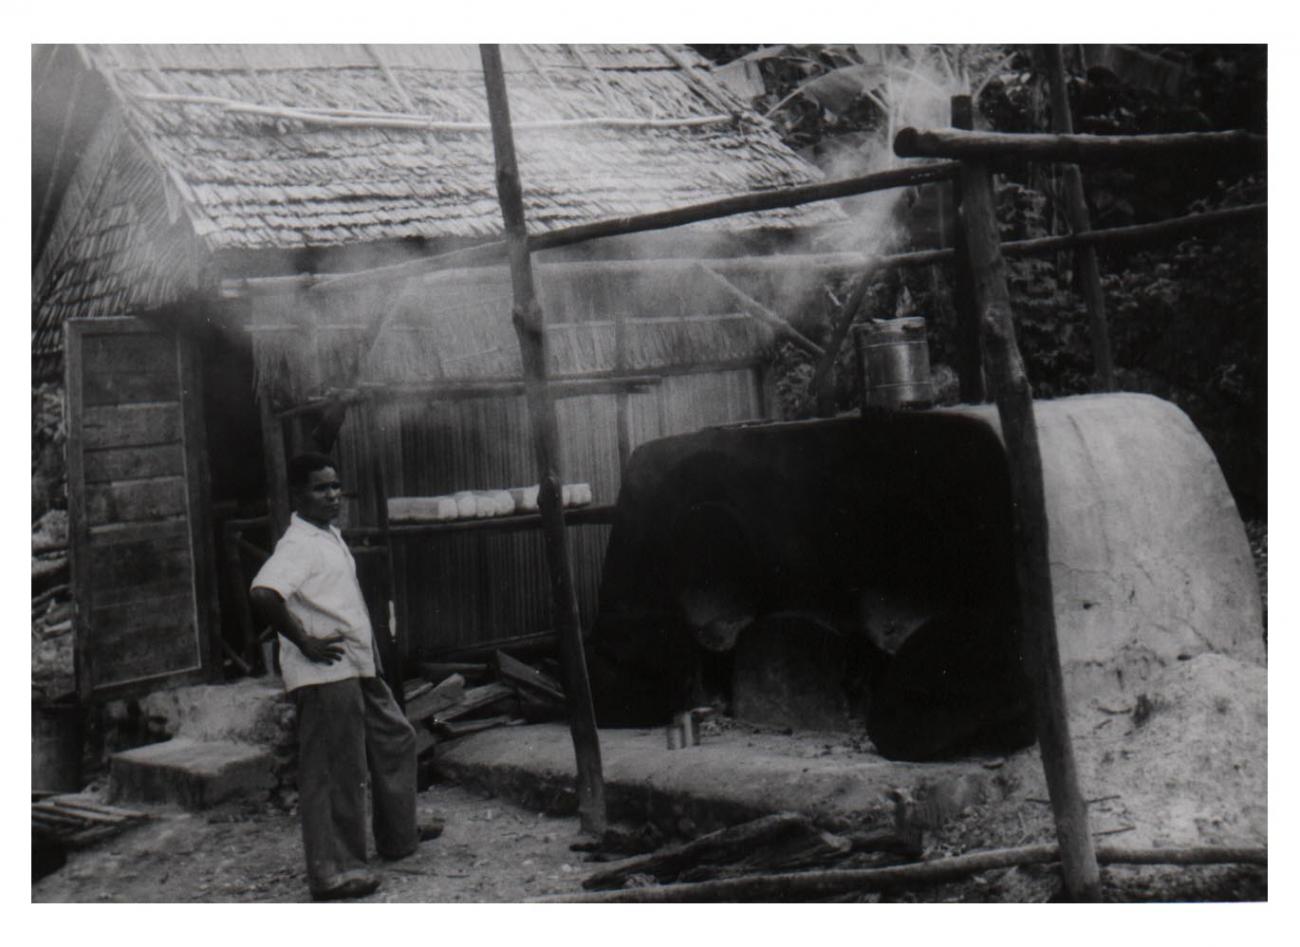 BD/54/54 - 
Bakkerij met oven te Kaimana
